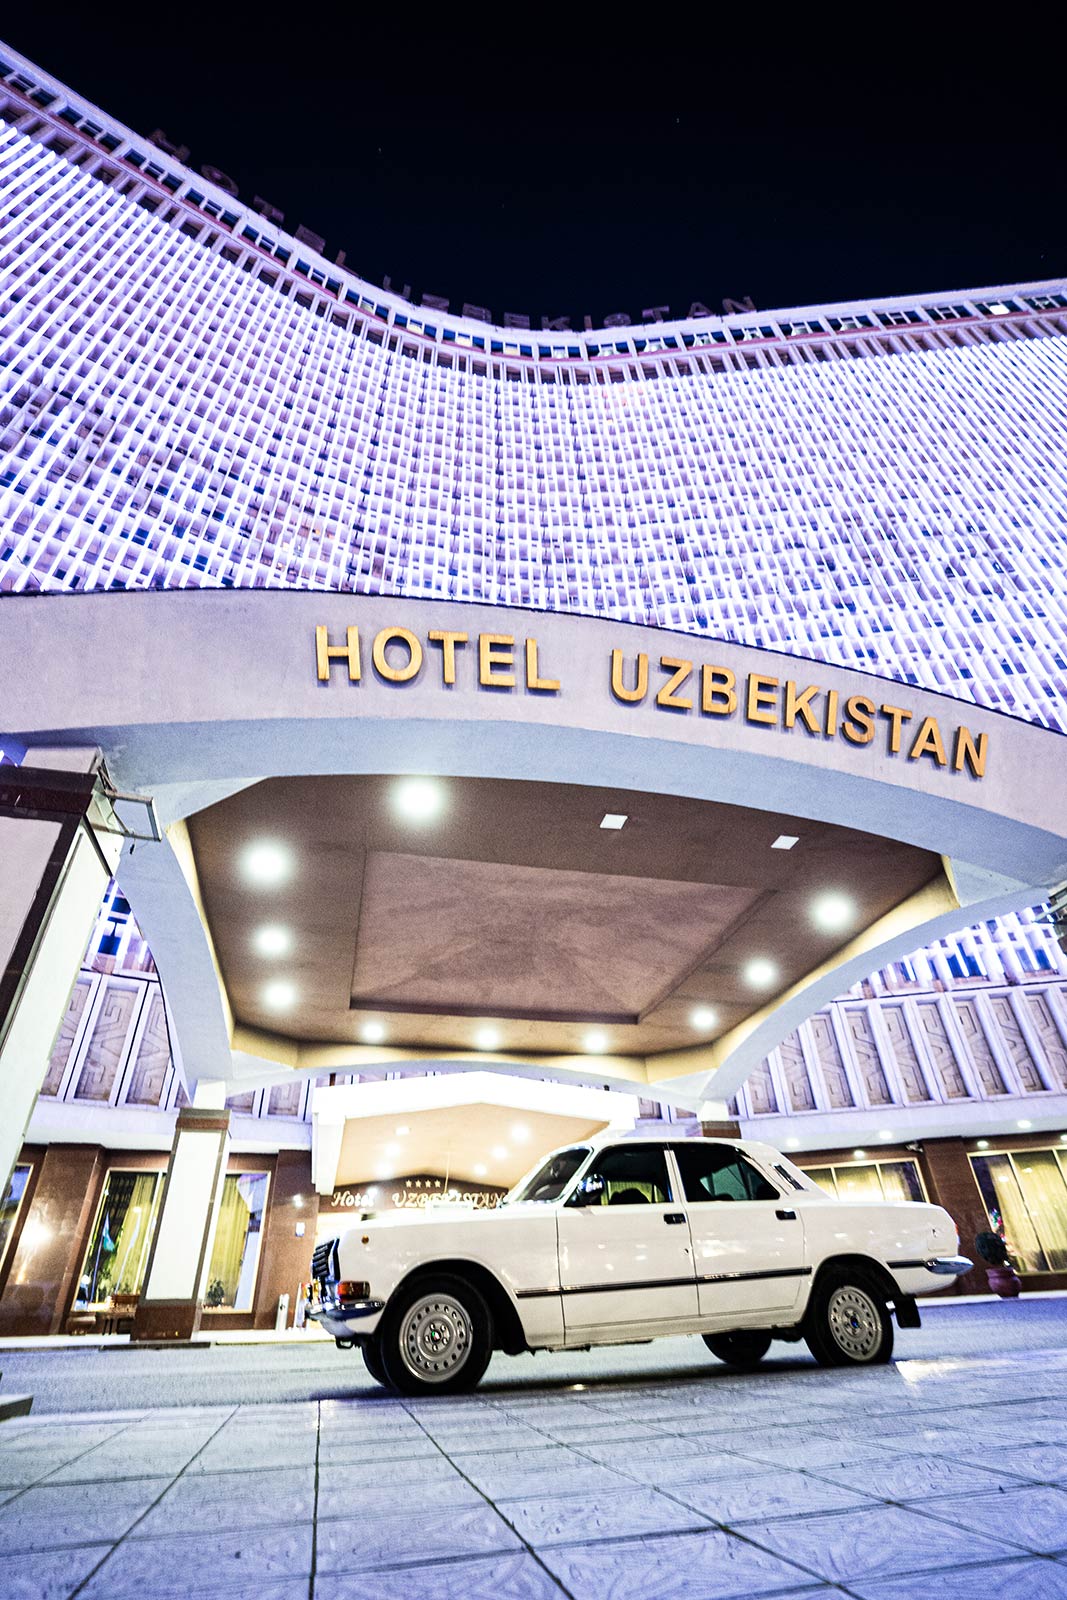 Hotel Uzbekistan in Tashkent, Uzbekistan. A day in stunning Samarkand